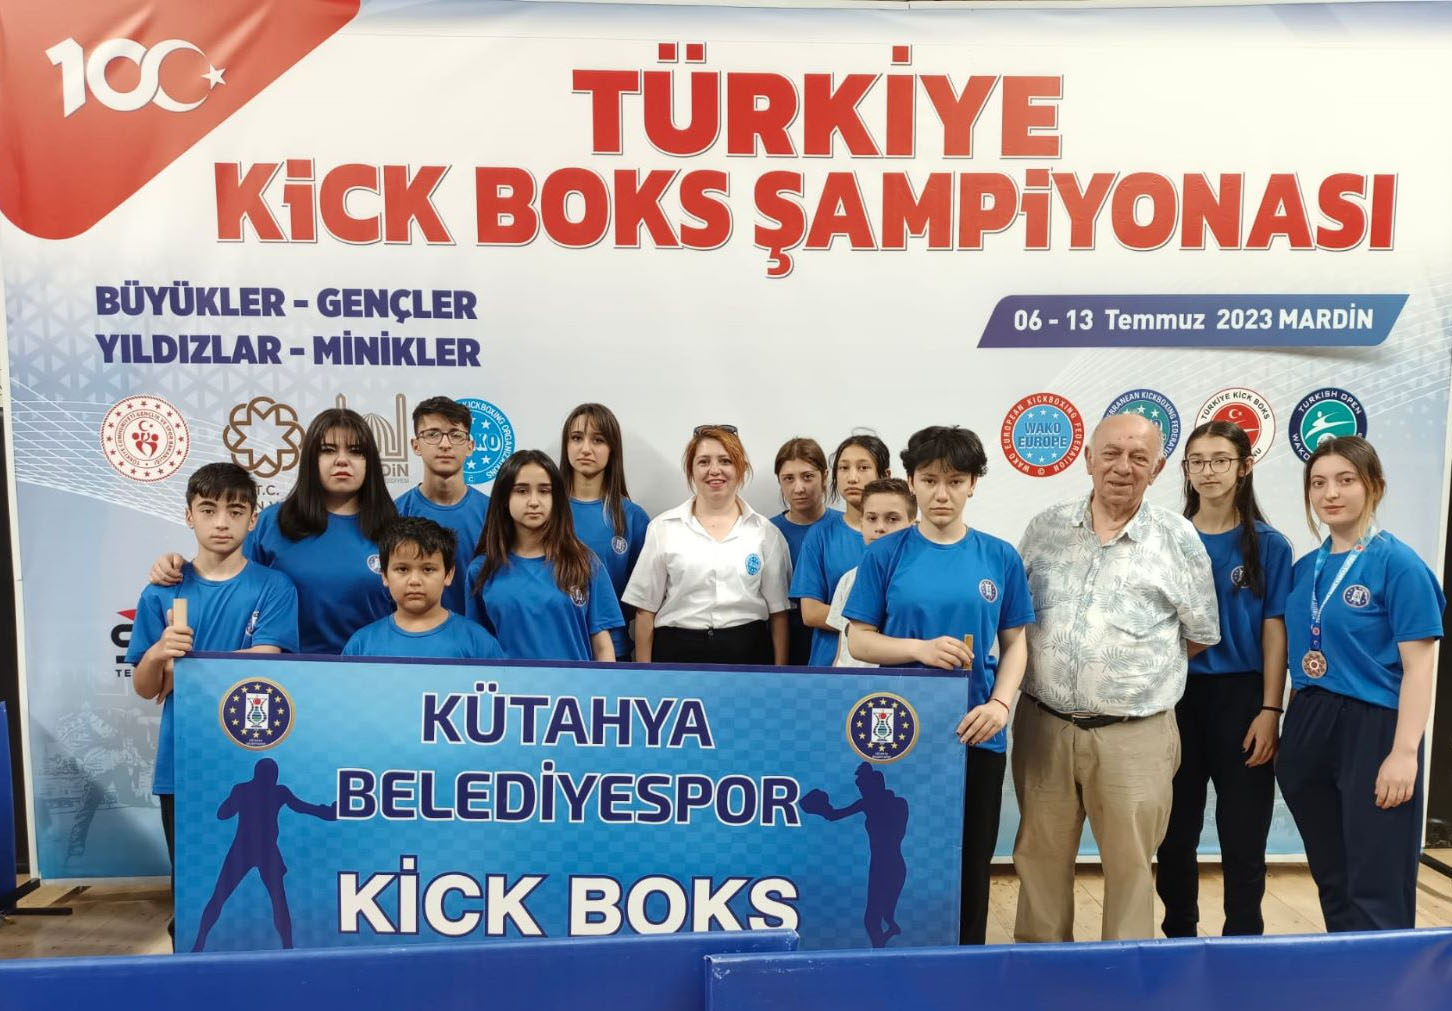 Kick Bokscular Türkiye Şampiyonasından 7 Madalyayla Döndü